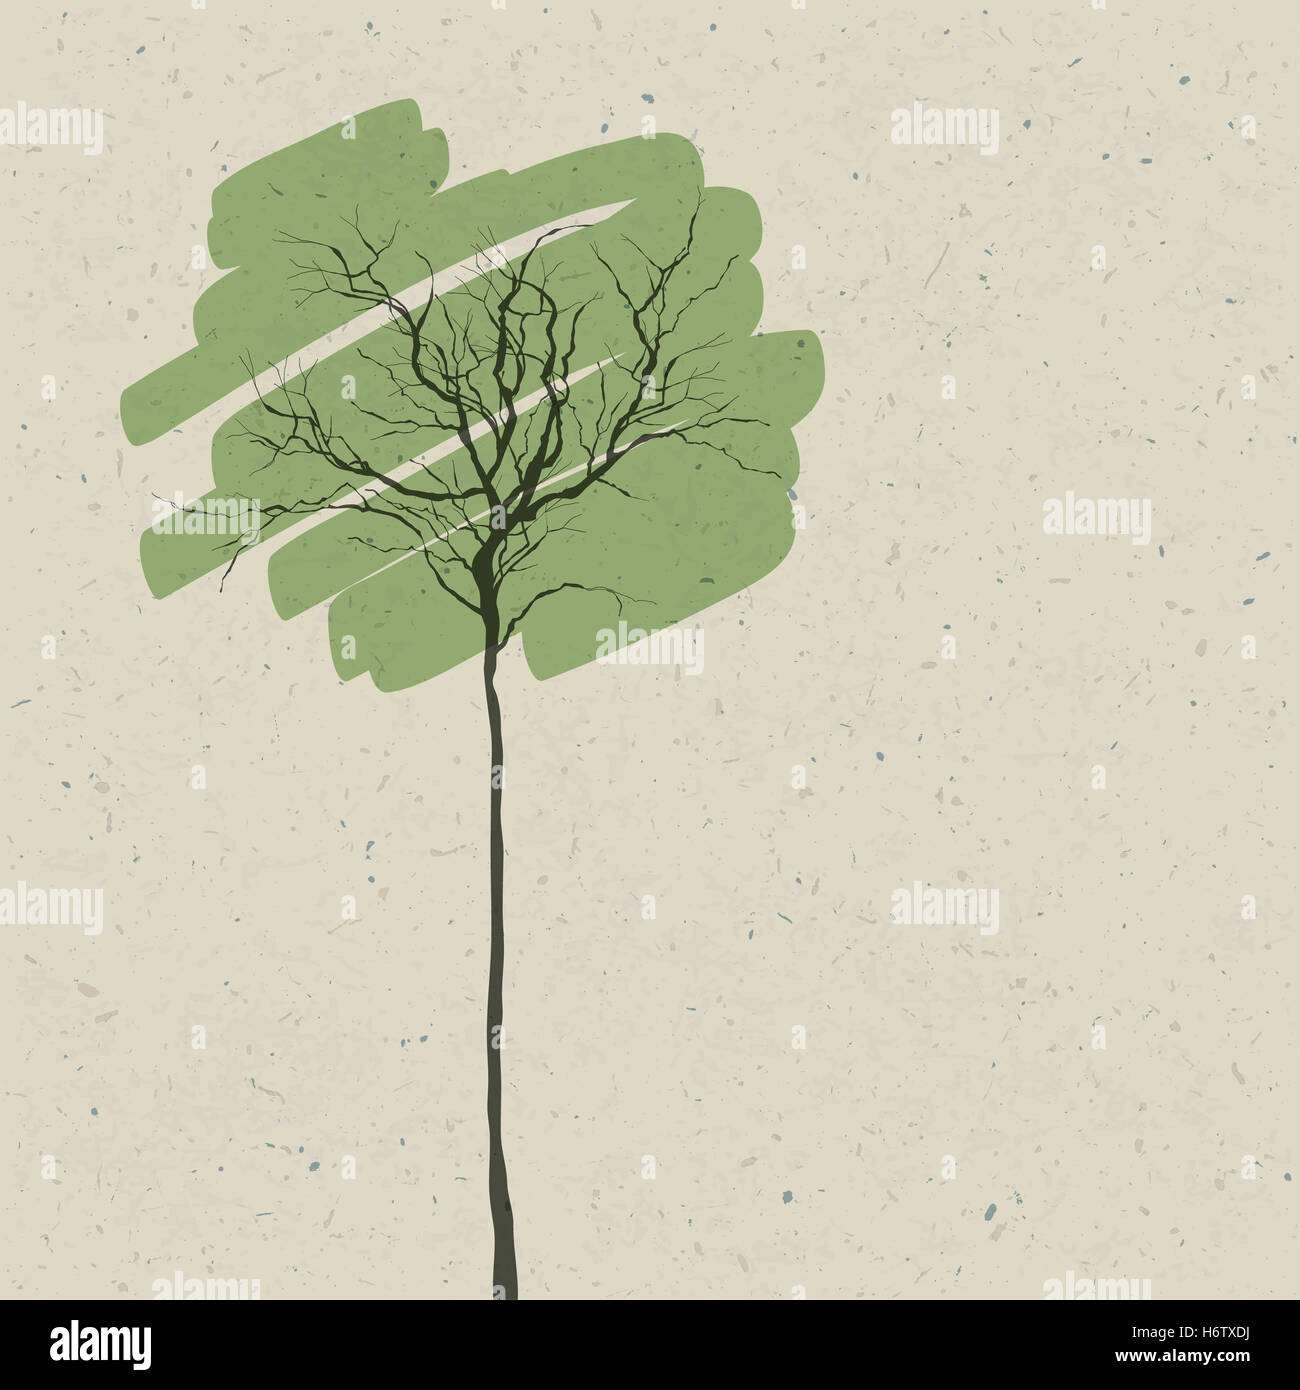 Environnement Environnement eco simple feuille d'arbre tronc jardin d'art d'été peinture summerly illustration silhouette Direction générale de printemps Banque D'Images